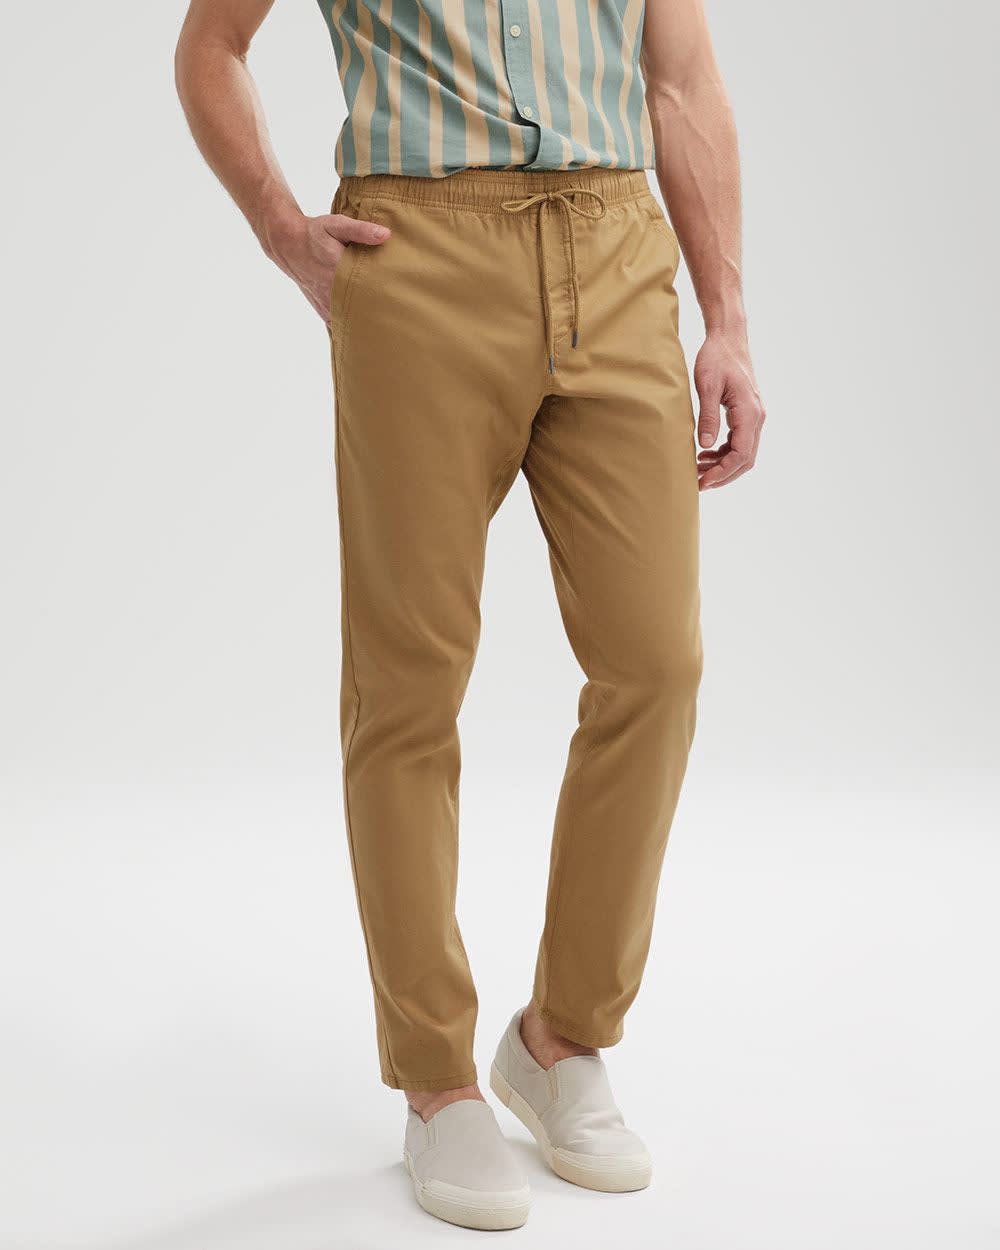 Pantalon Large à Taille élastique, Taille élastique Décontractée